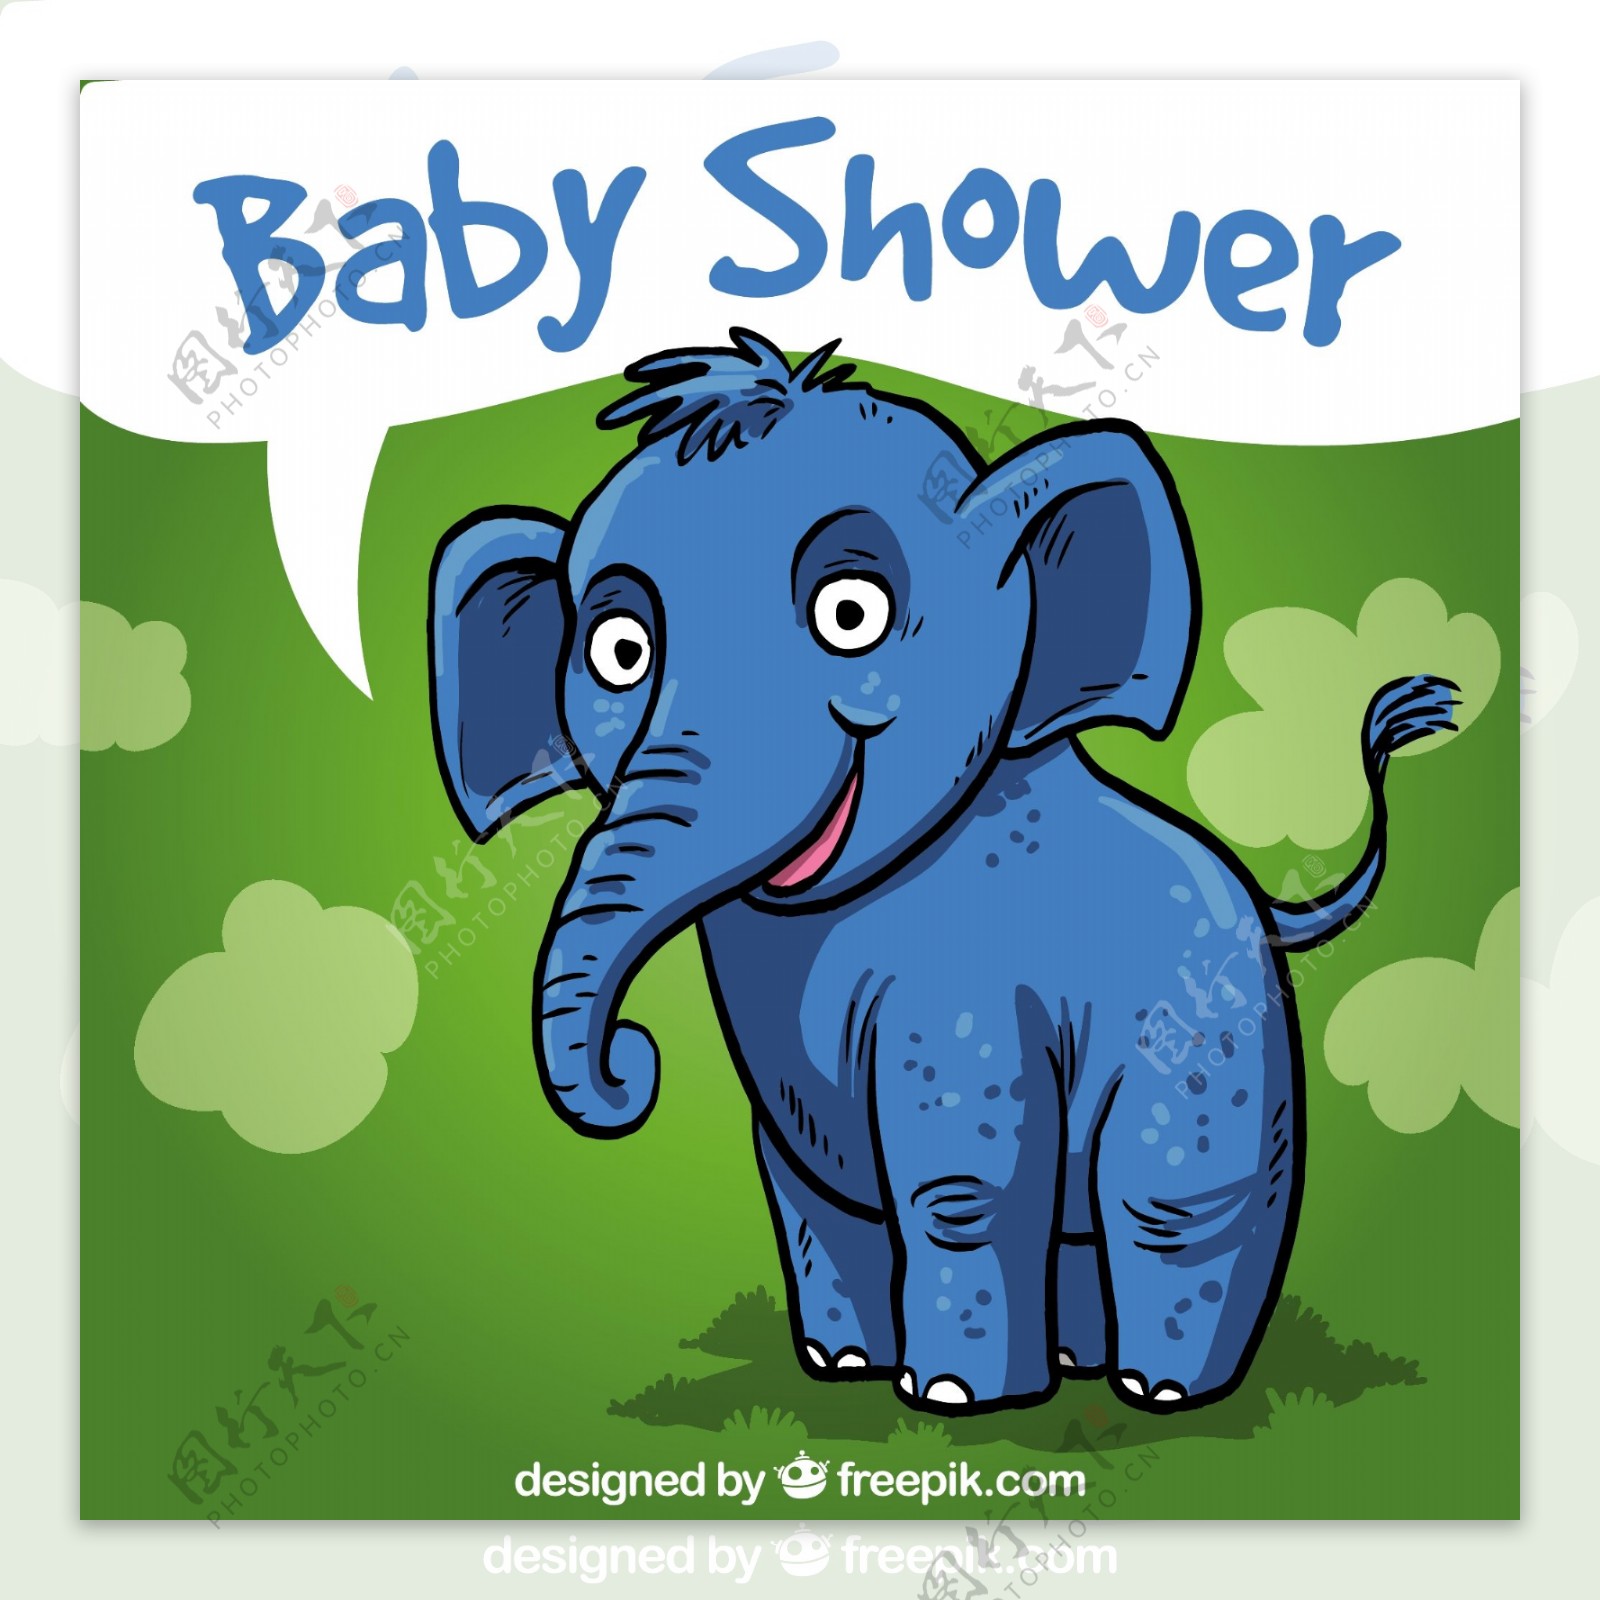 一只手拉着大象的婴儿洗澡卡片